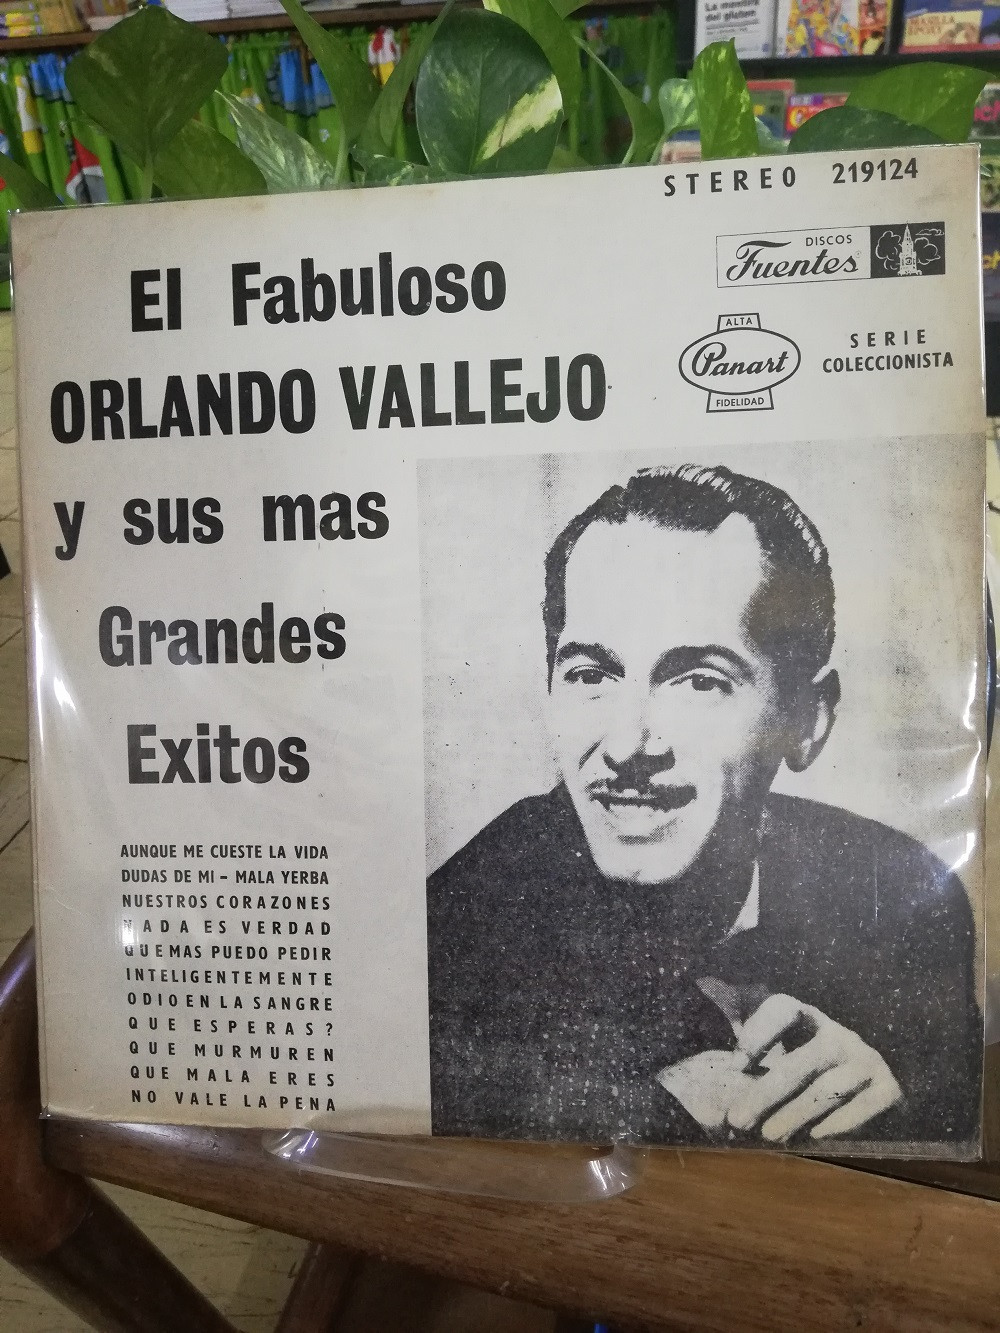 Imagen LP ORLANDO VALLEJO - EL FABULOSO 1